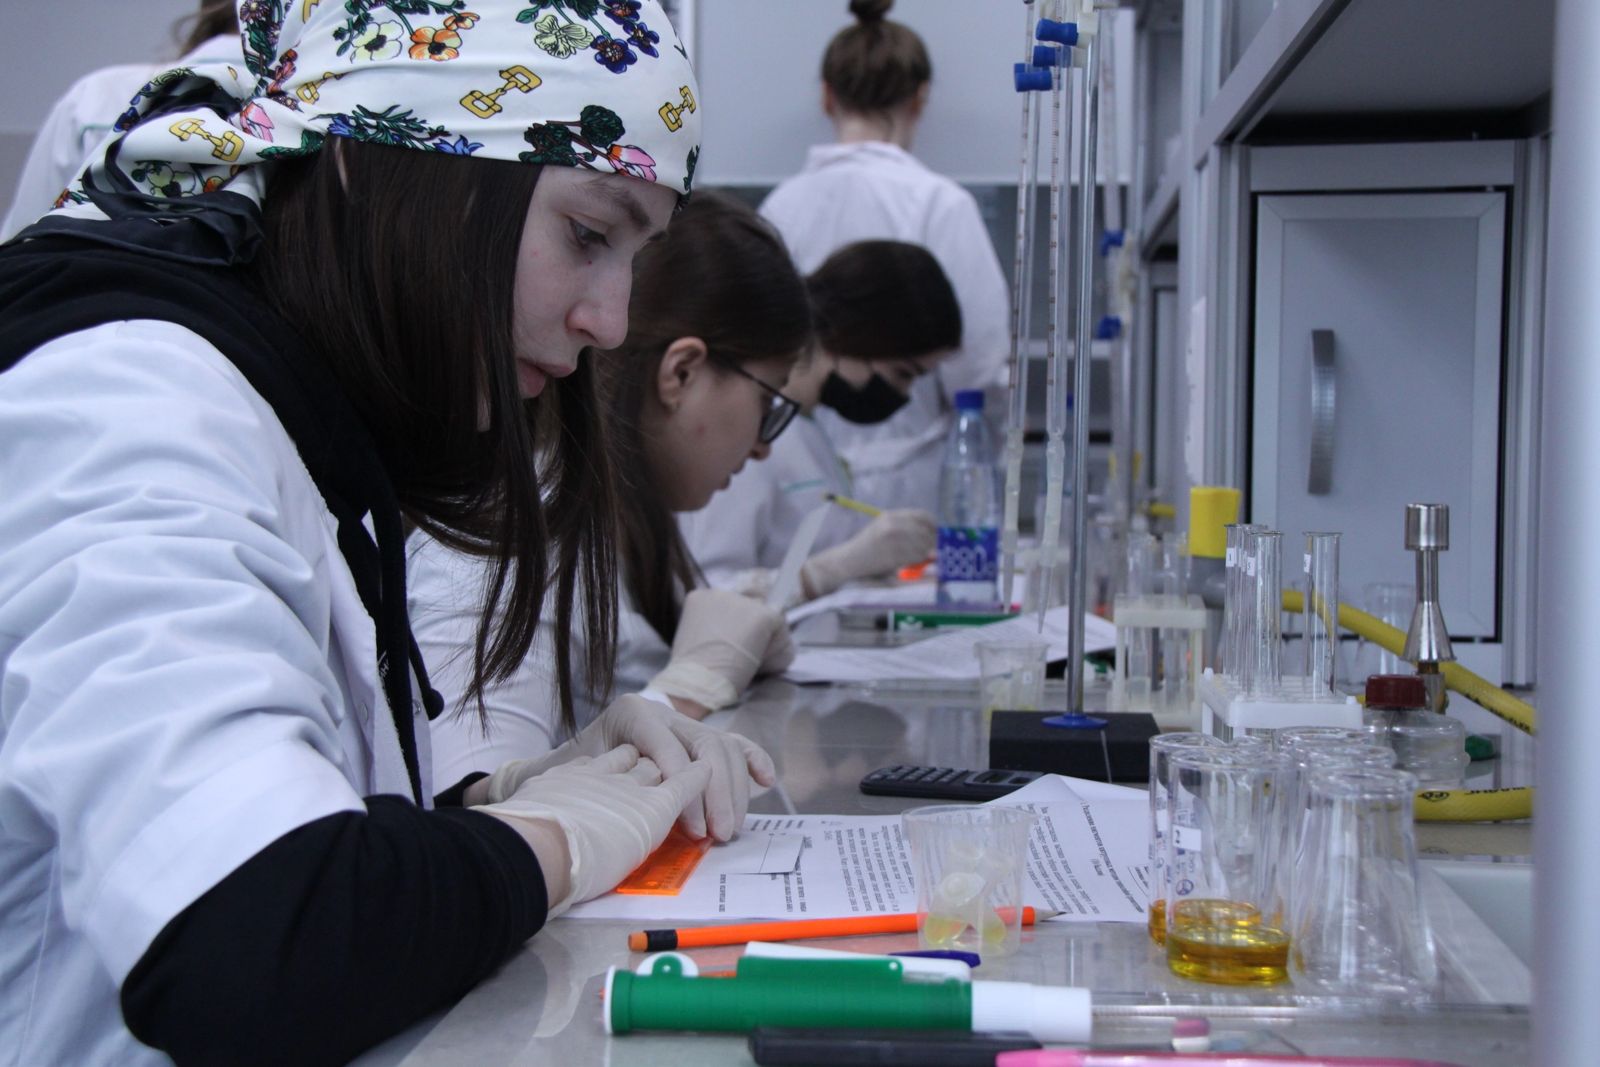 Студенты КБГУ стали победителями и призёрами межвузовской олимпиады «Биохимия – основа жизни»